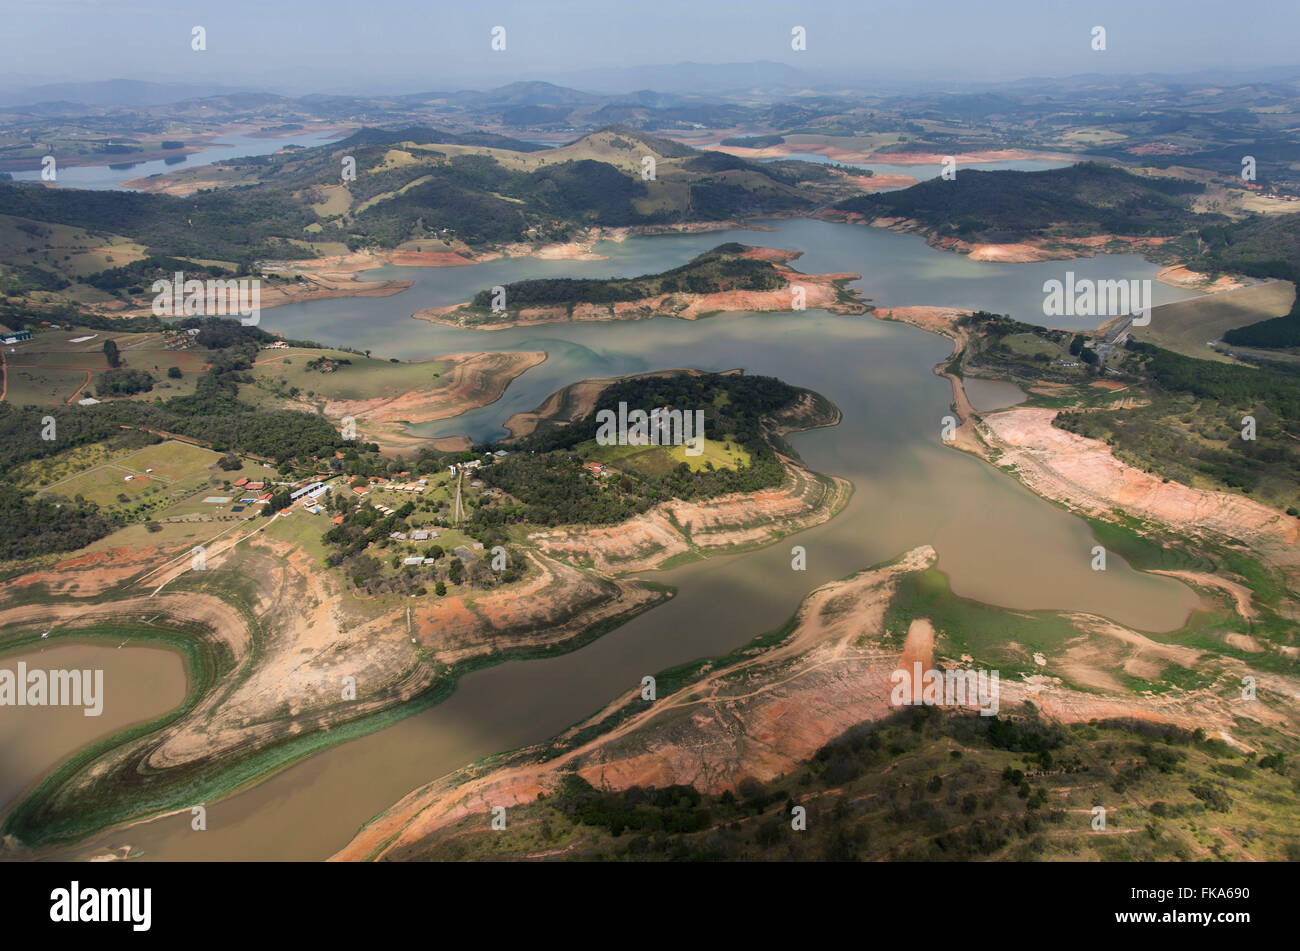 Vue aérienne du barrage Jaguari - formé par Jaguari Jacarei et rivières en période de sécheresse forte Banque D'Images